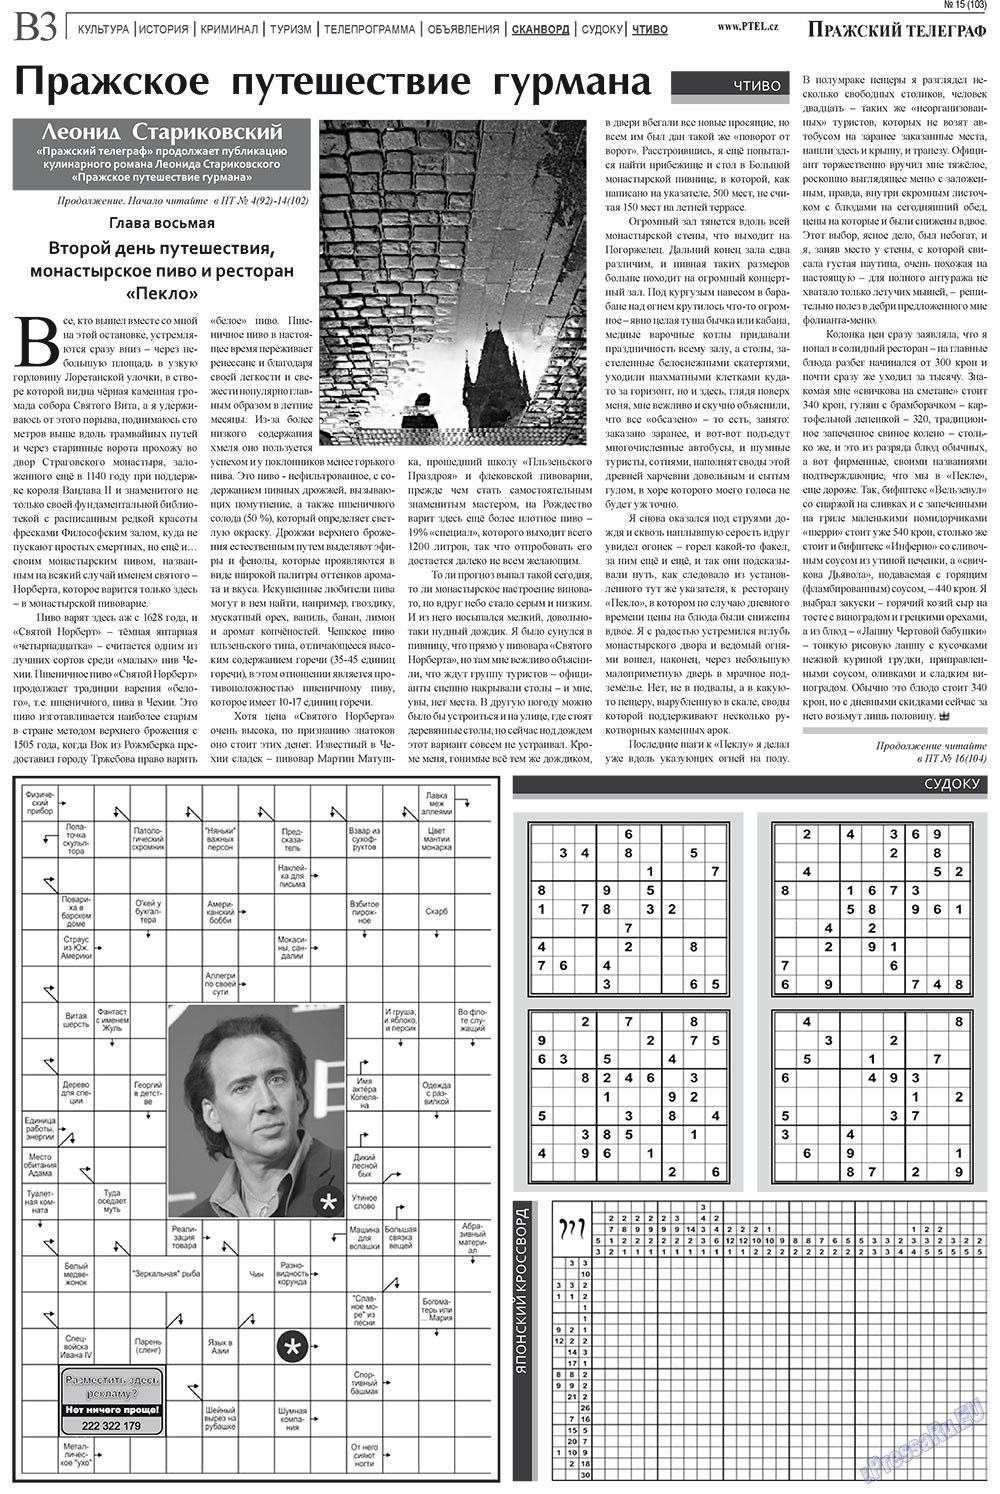 Prazhski telegraf (Zeitung). 2011 Jahr, Ausgabe 15, Seite 11